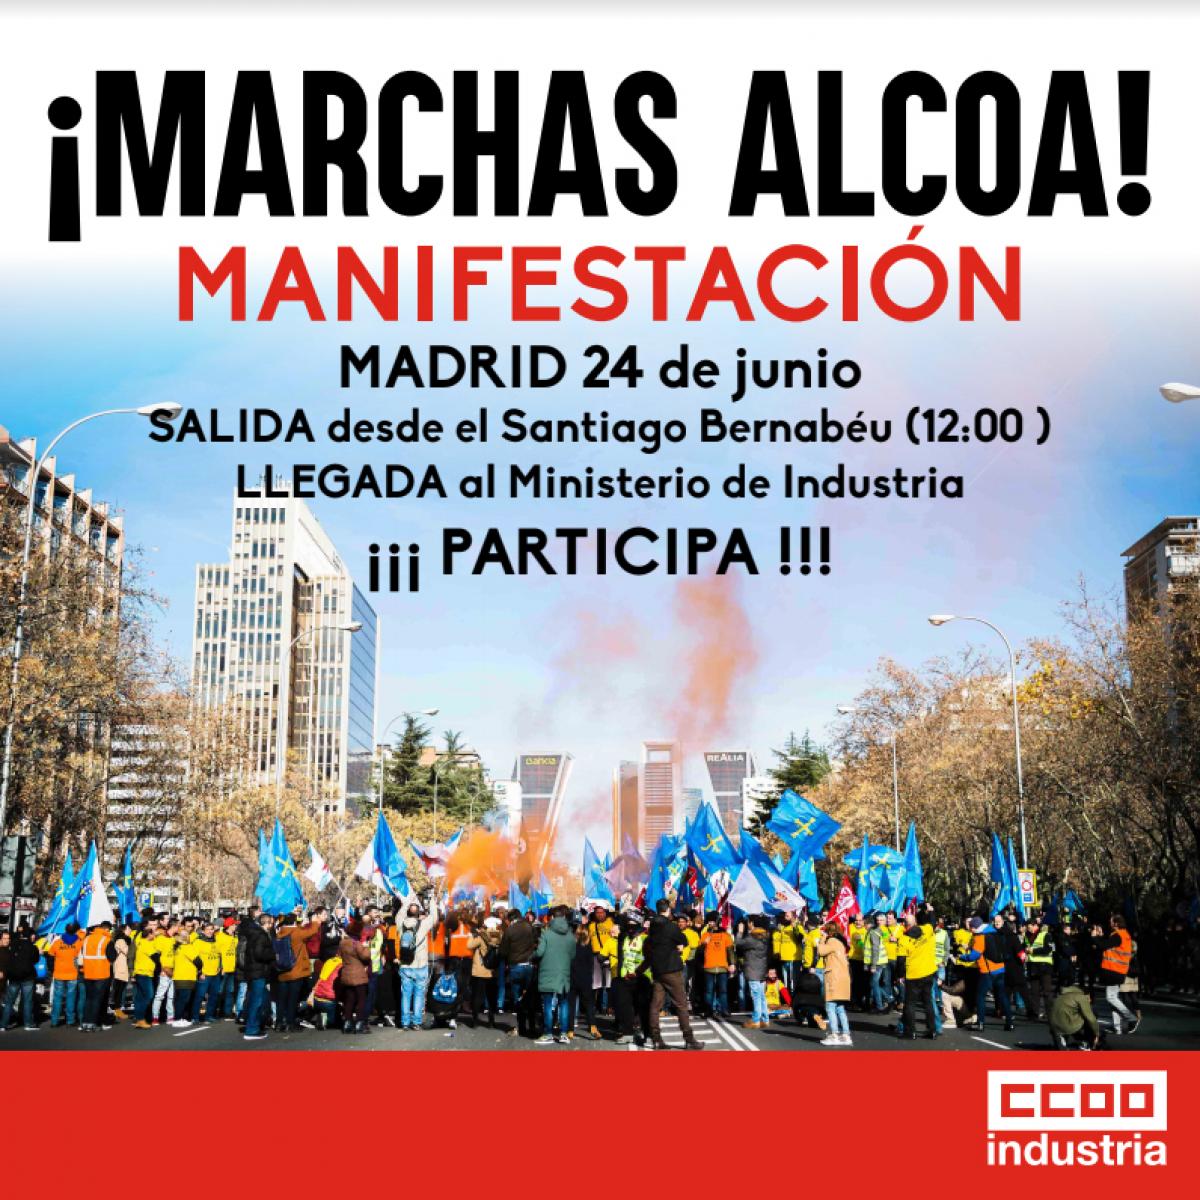 Manifestación de Alcoa en Madrid